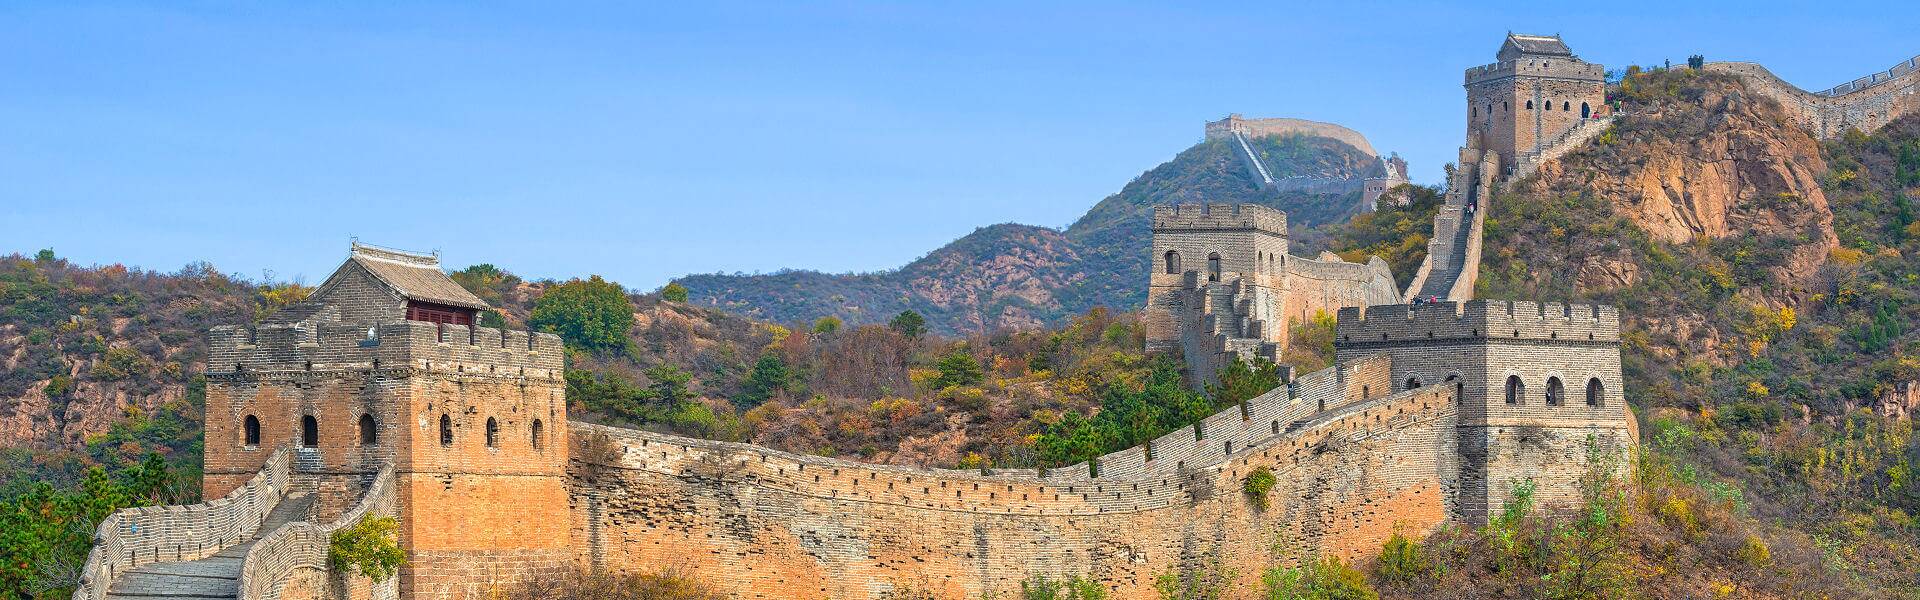 China Rundreisen im Land der Morgenröte. Kaiserpaläste, Kultur, Natur, Supermetropolen und die große Mauer